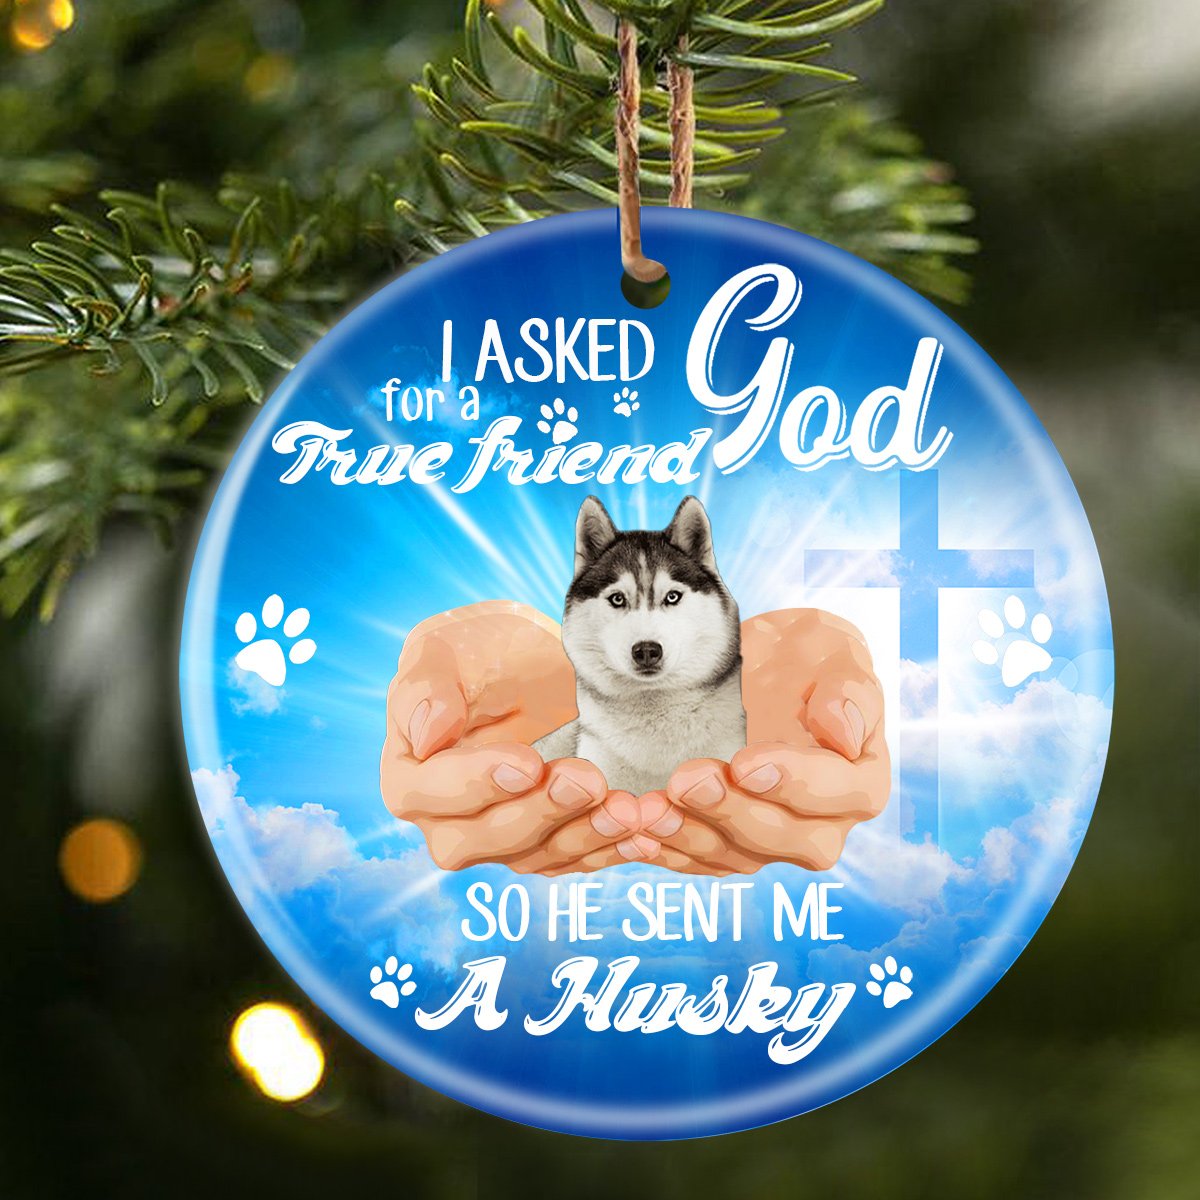 God Send Me A/An Husky Porcelain/Ceramic Ornament